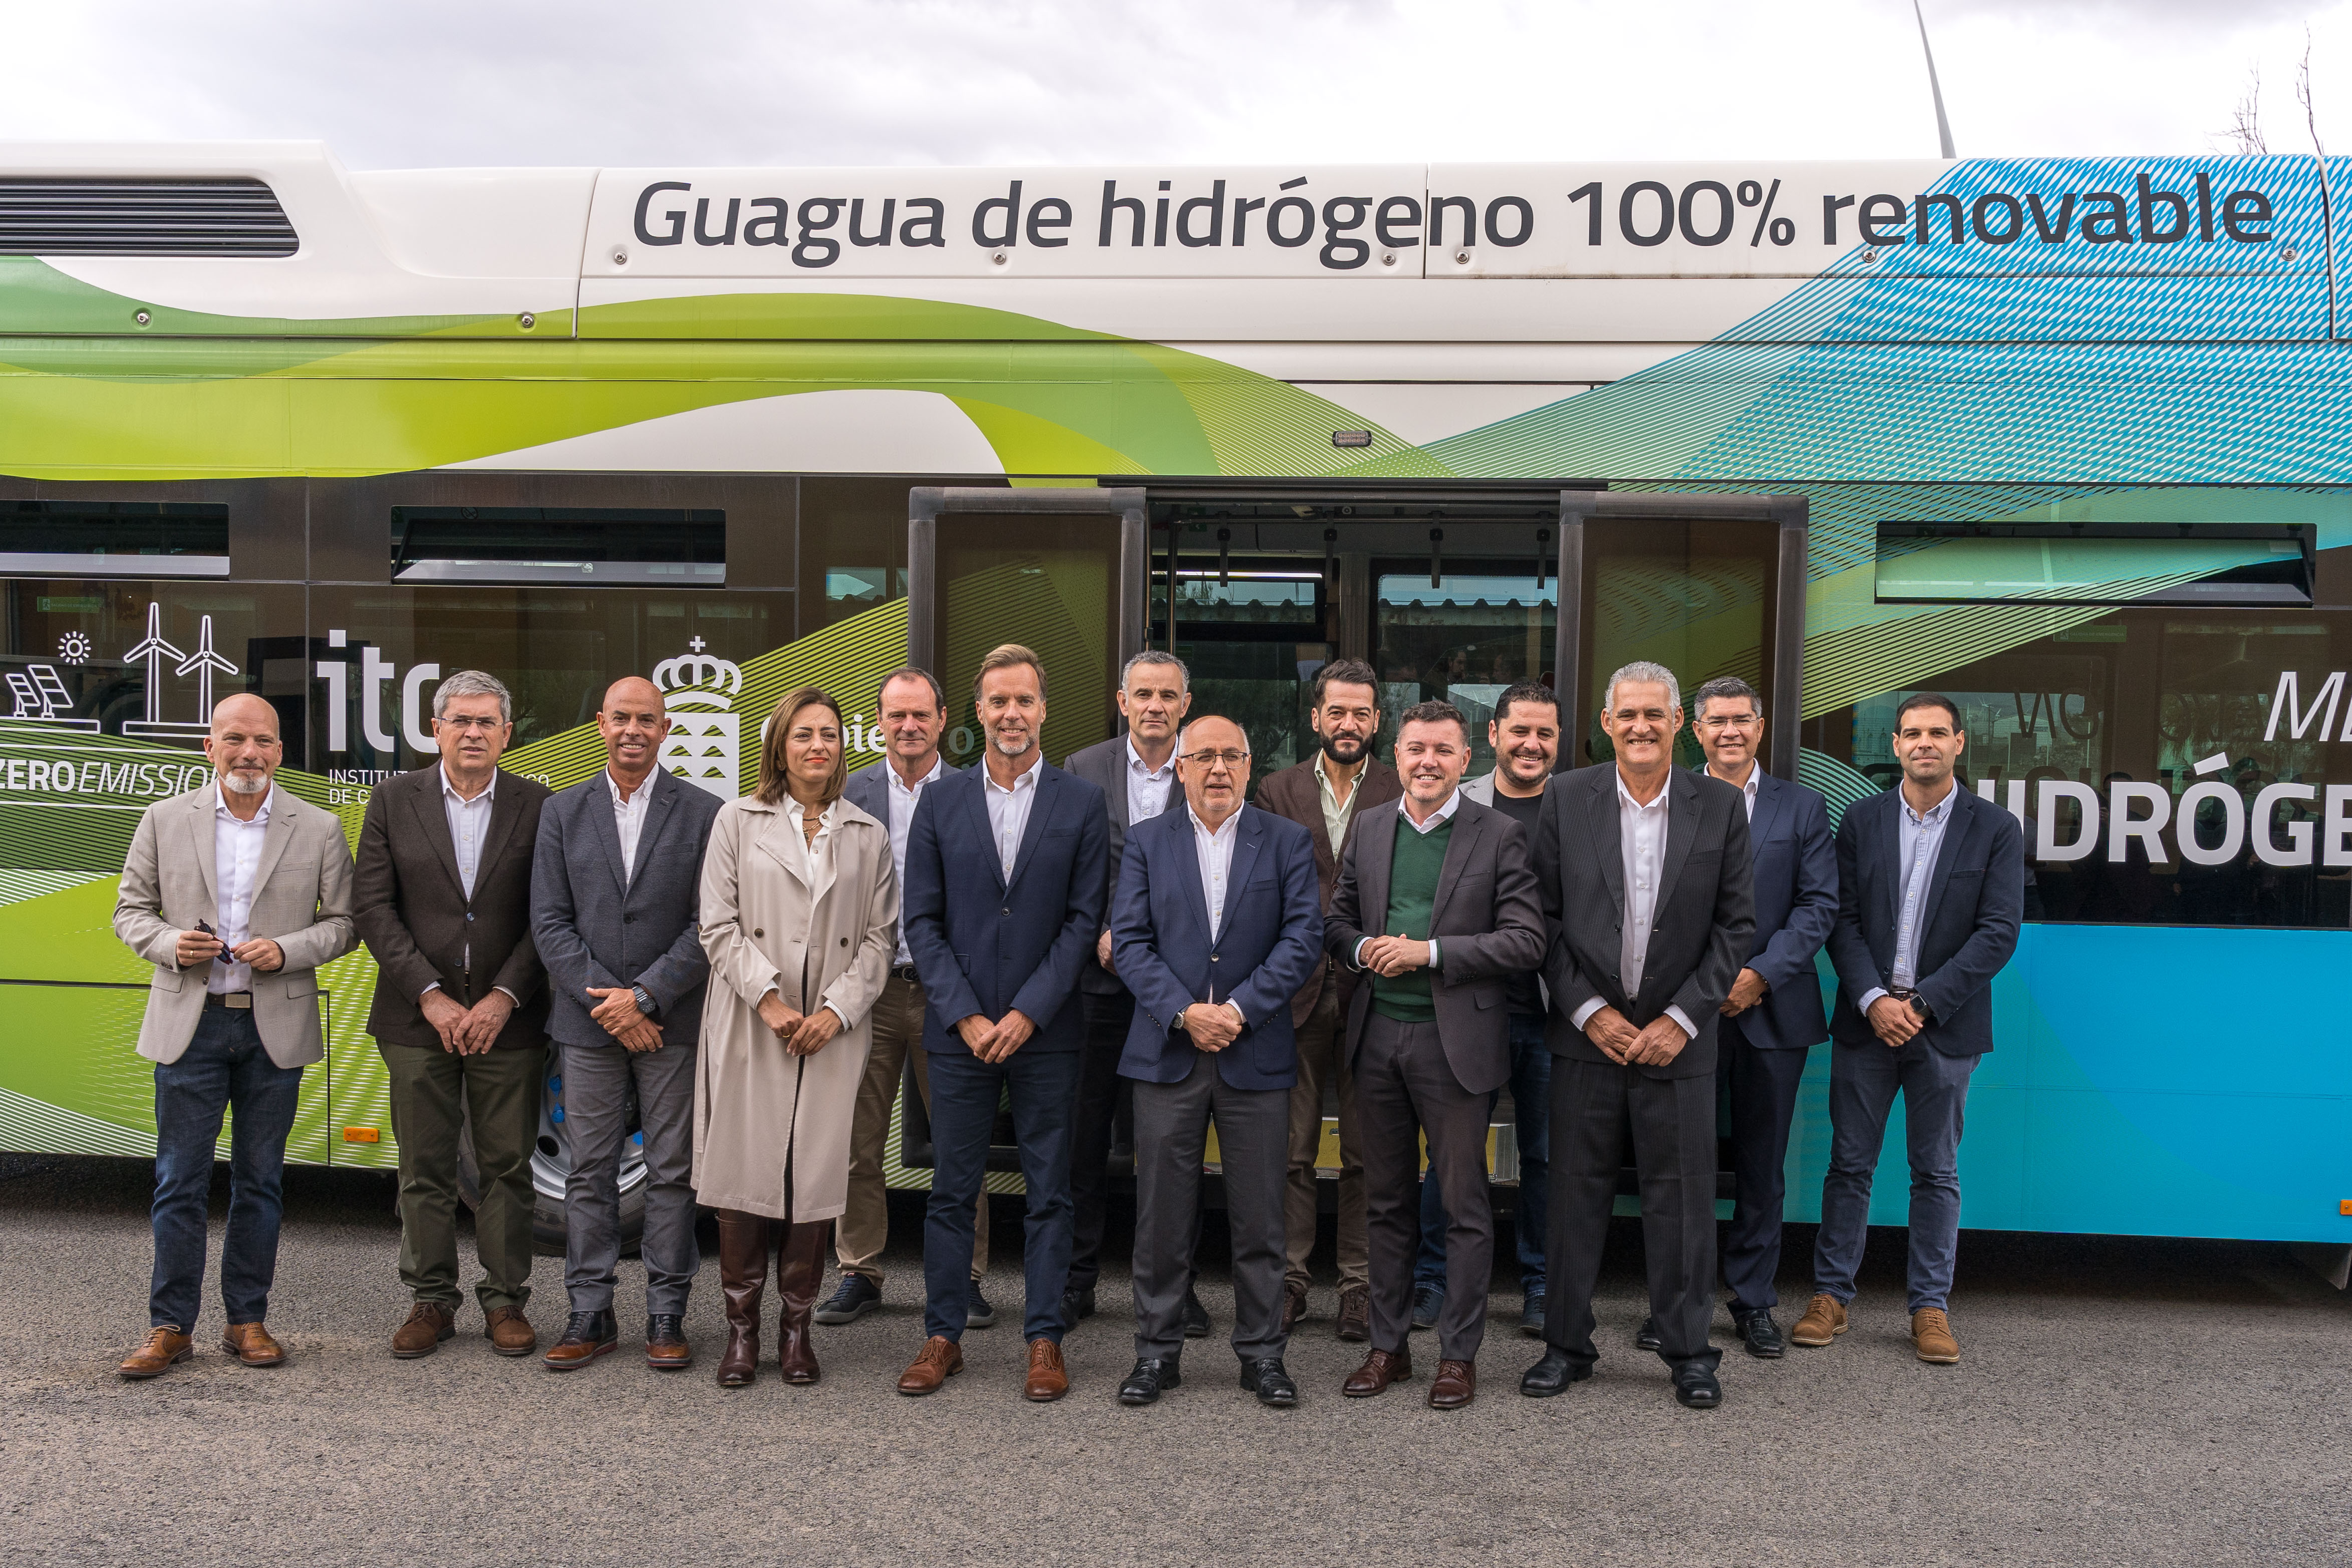  La primera guagua que utiliza hidrógeno producido en el ITC comienza a circular en la línea 25 de Global con diez paradas en el municipio